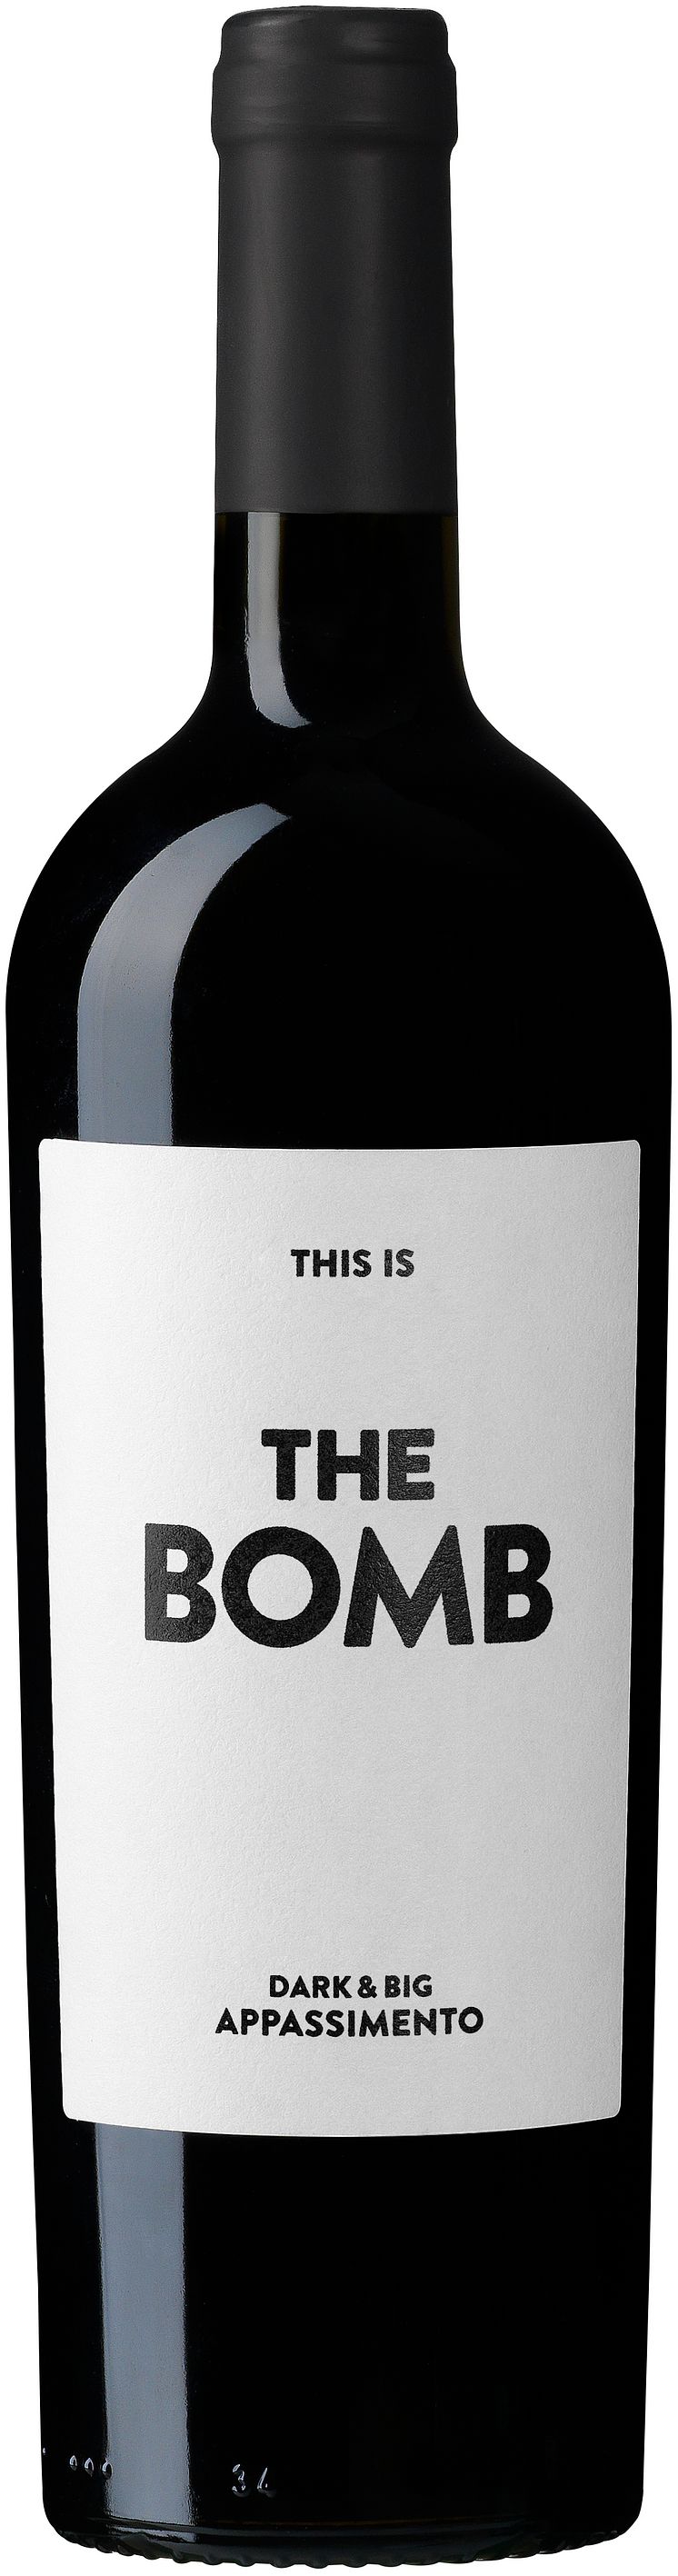 The Bomb flaskbild